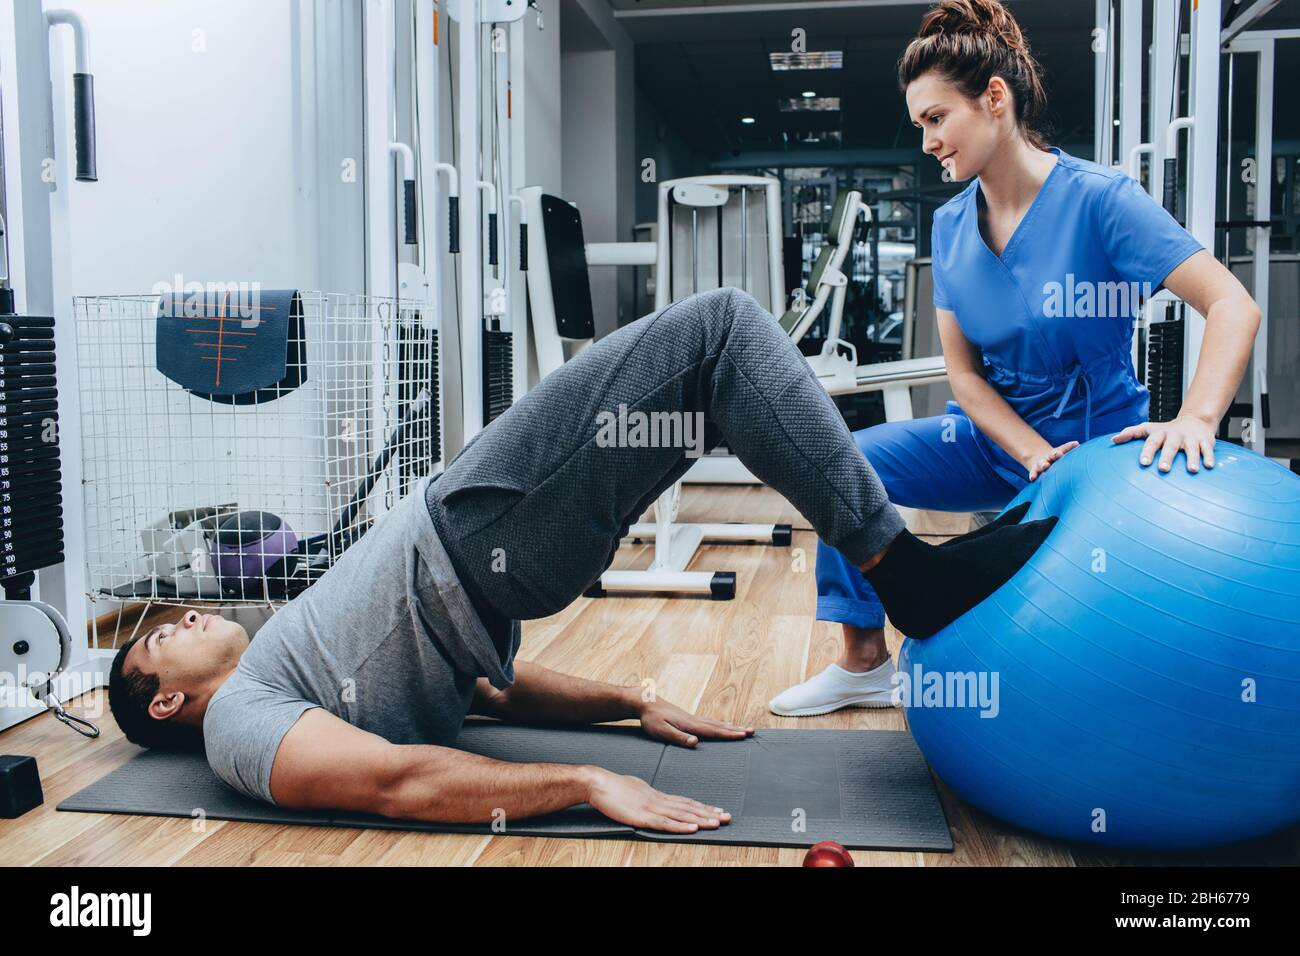 Physiotherapeut hilft bei Übungen ein Mann, ein ehemaliger Militärmann, Behandlung von Verletzungen in einem Militärkrankenhaus. Stockfoto